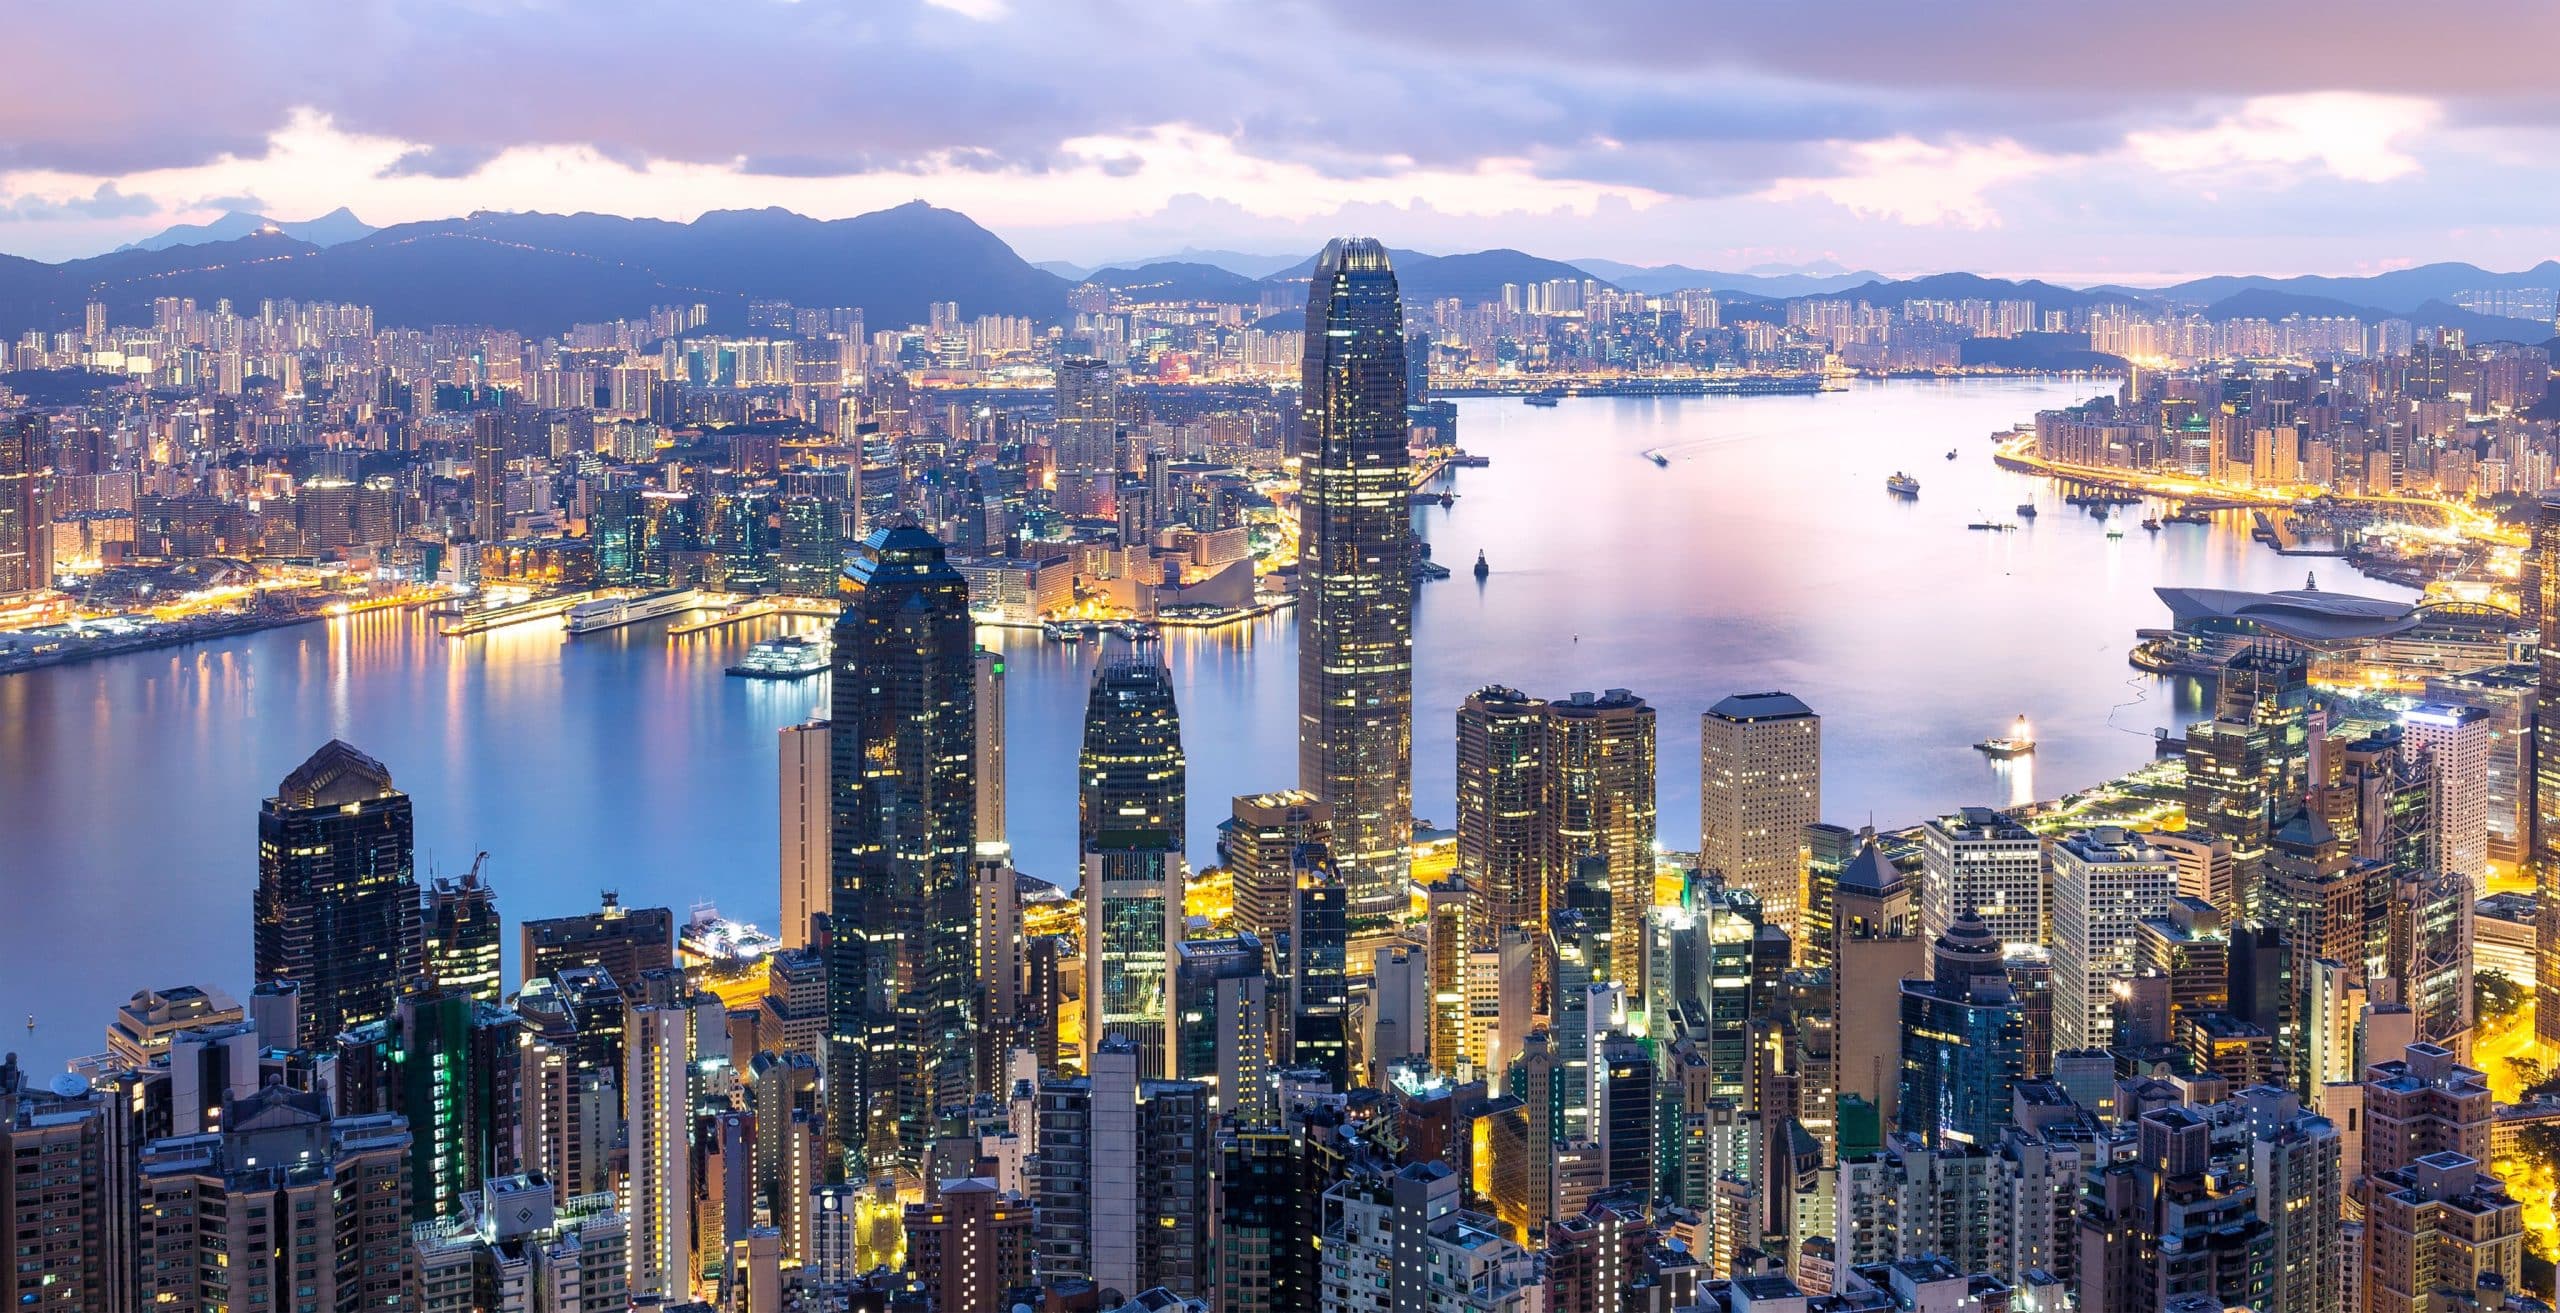 Hong Kong to Ban CBD – Is This China Overstepping?